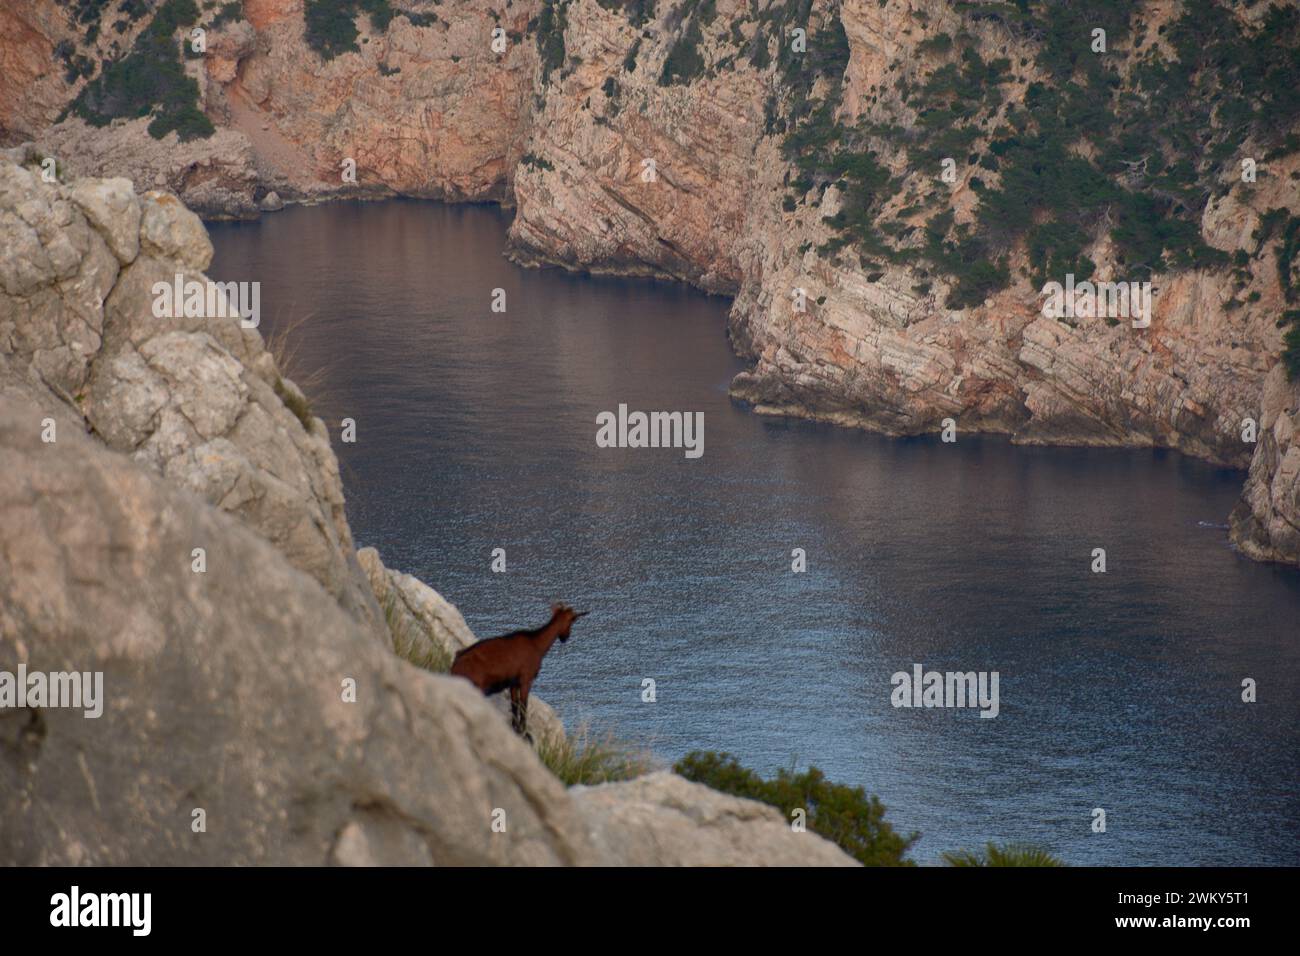 Eine mallorquinische Wildziege lehnt sich über die Klippe, um die Küste von El Colomer auf den Balearen, Spanien, zu beobachten Stockfoto